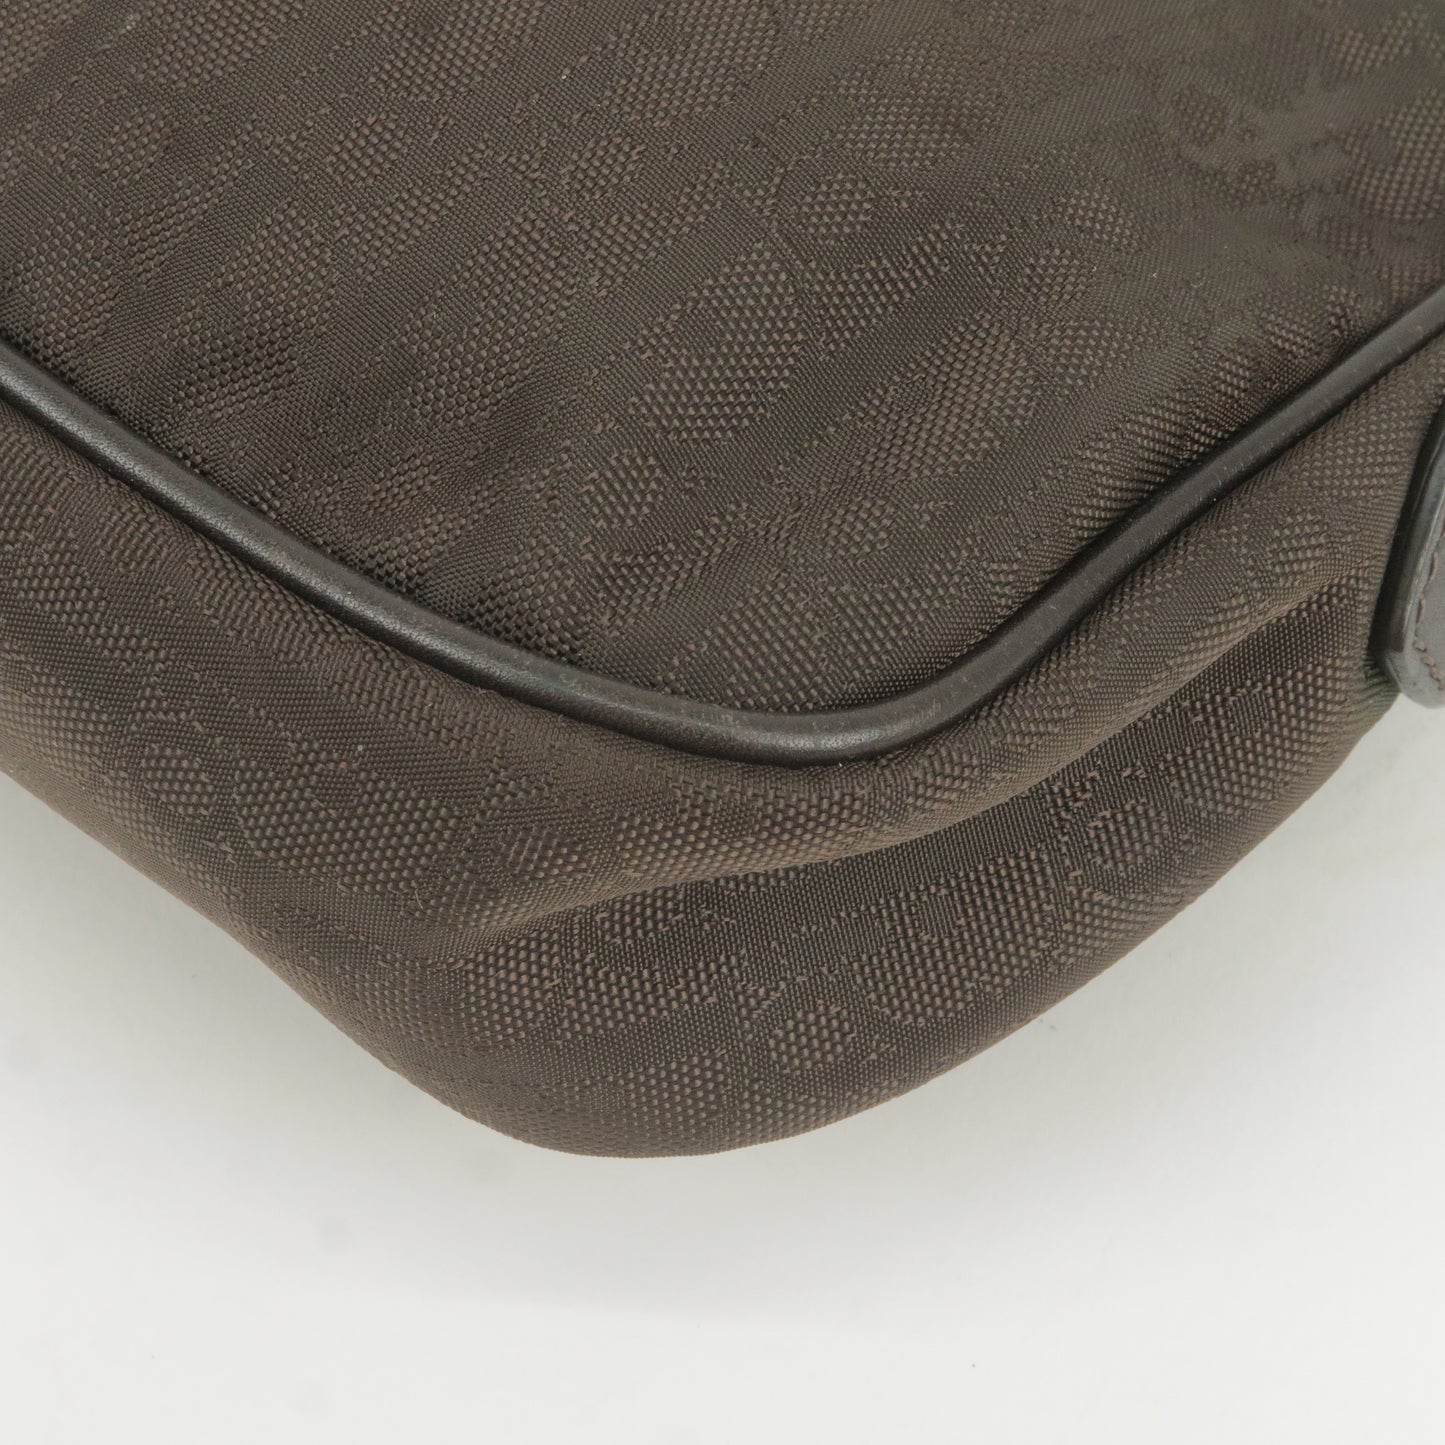 Christian Dior Trotter Canvas Leather Shoulder Bag Brown